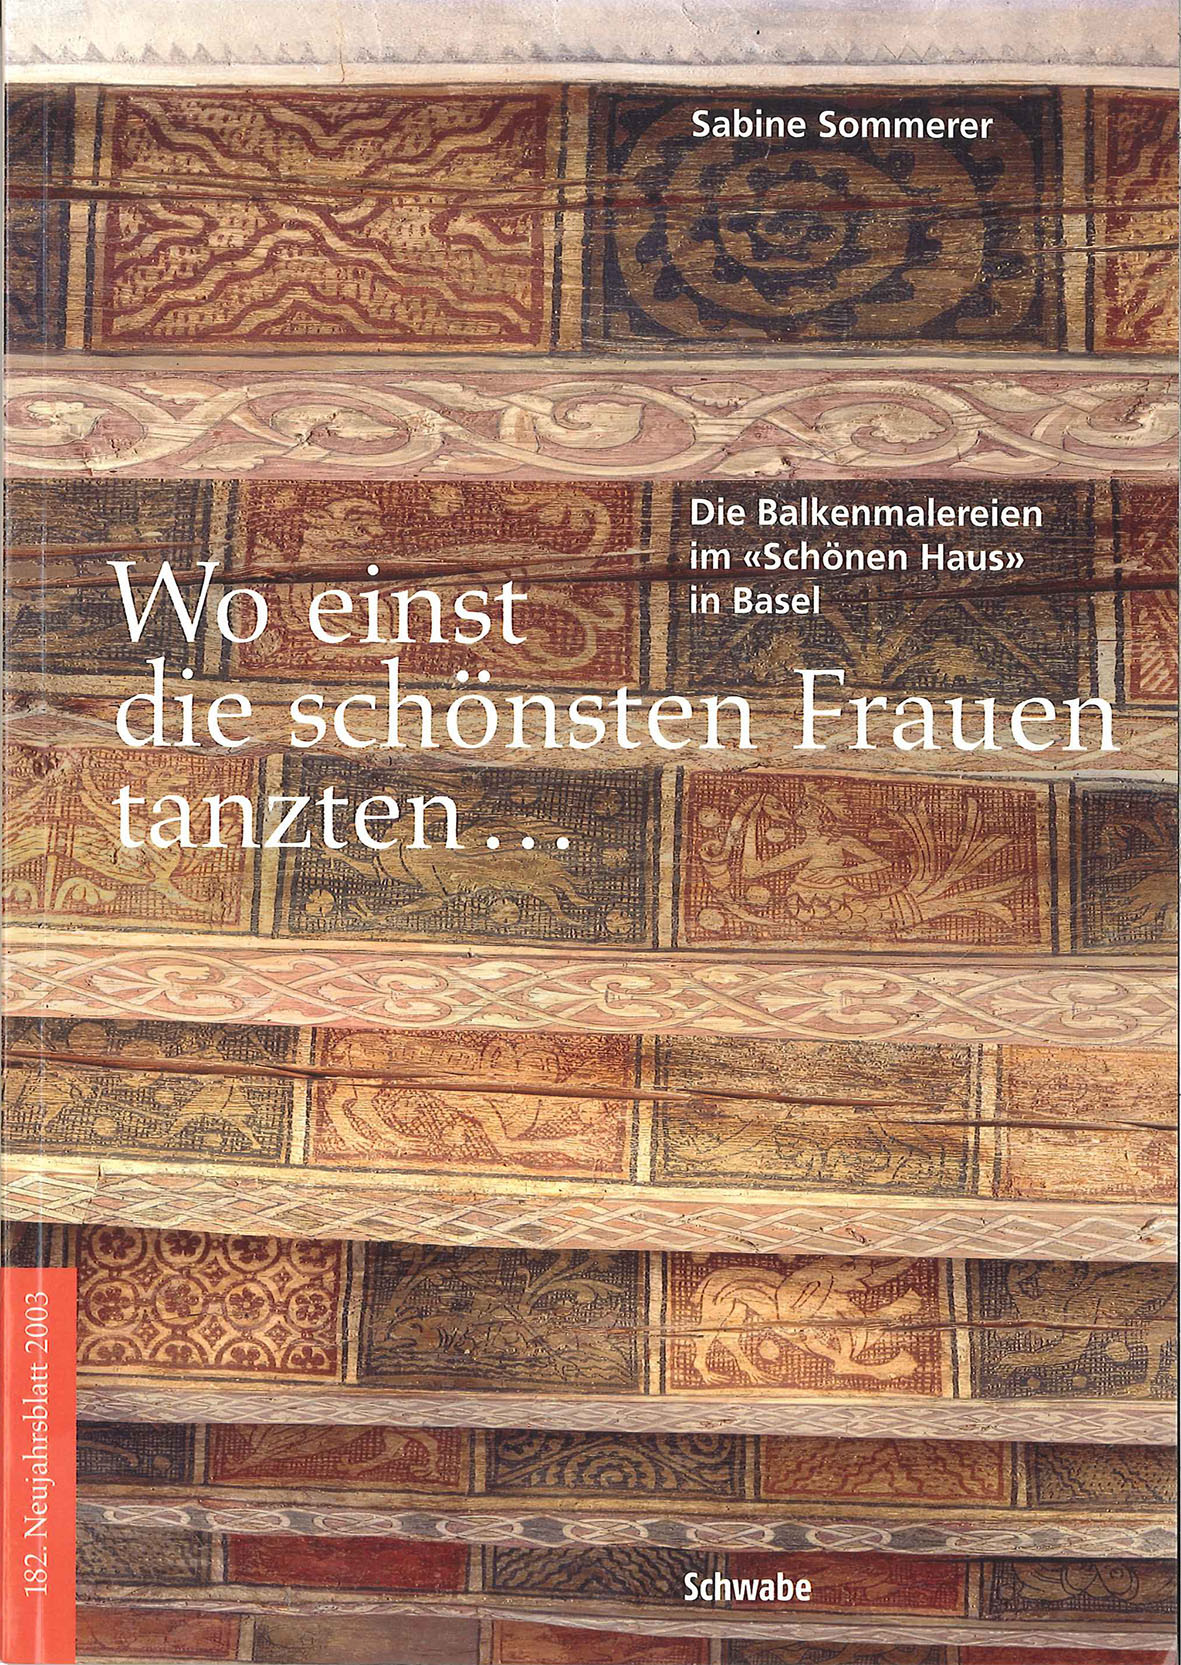 Schönes Haus Basel Cover